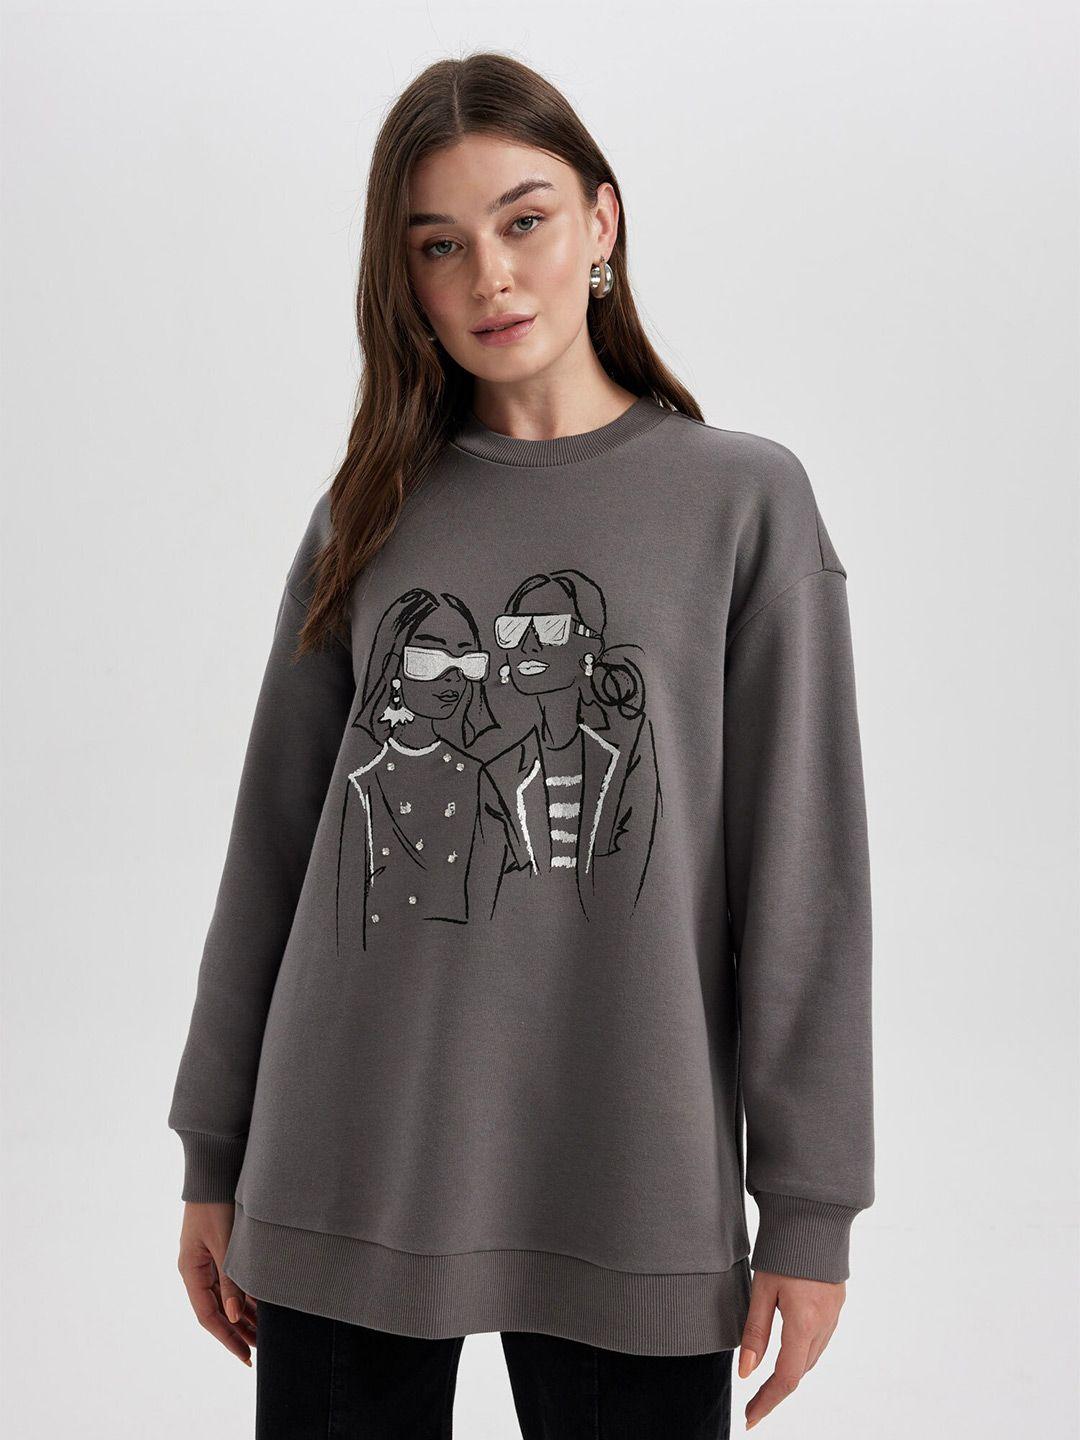 defacto graphic printed pullover sweatshirt